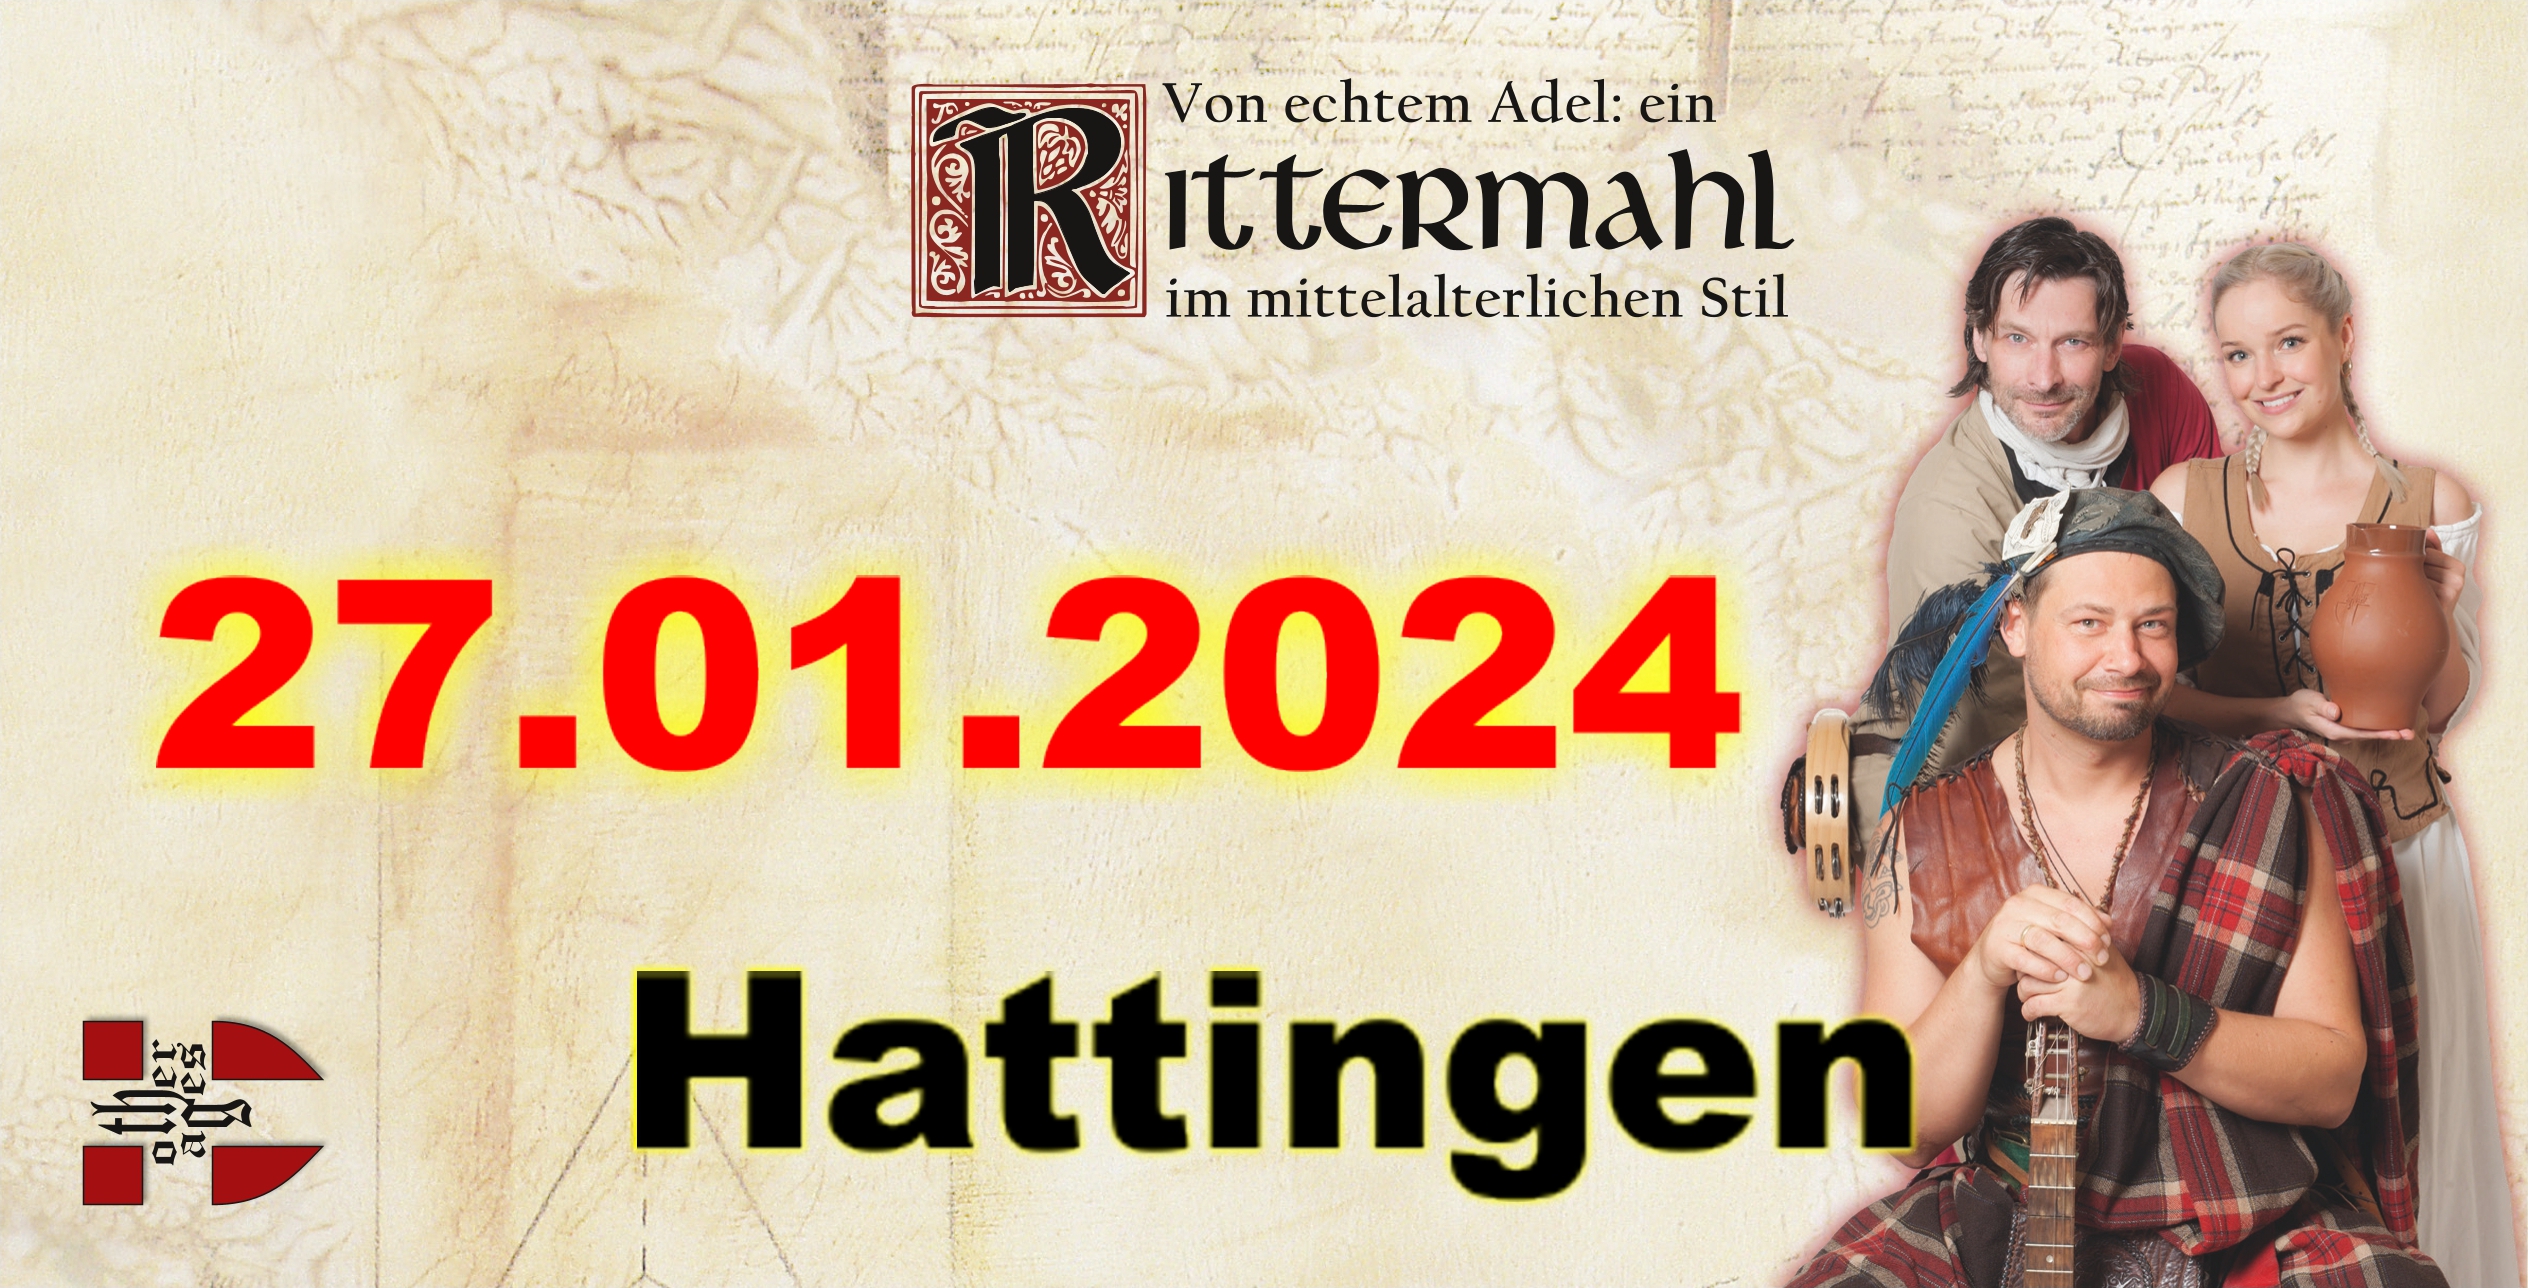 Rittermahl: Ein Abend bei Hofe - 27.01.24 in Hattingen (Wasserburg Haus Kemnade)